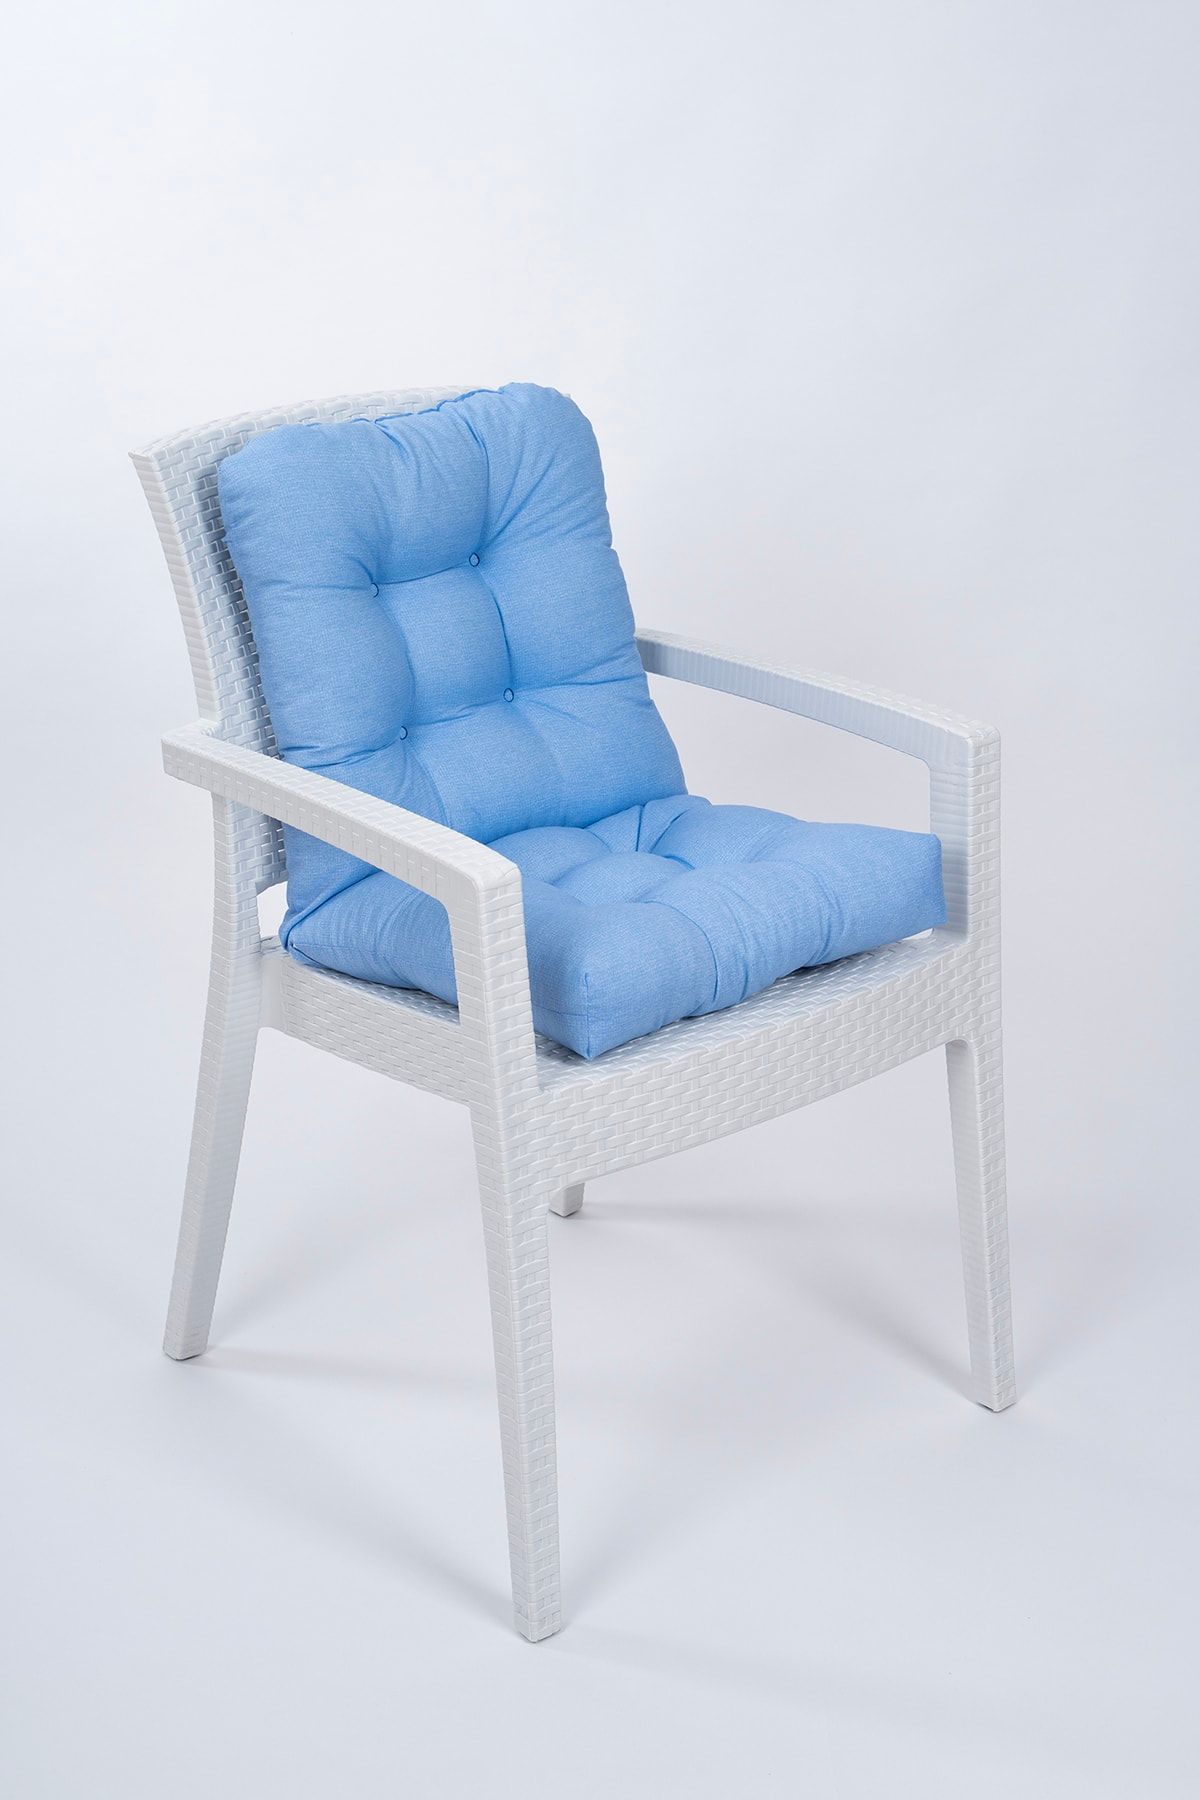 ALTINPAMUK Candy Pofidik Arkalıklı Mavi Sandalye Minderi Özel Dikişli Bağcıklı 43x88 Cm